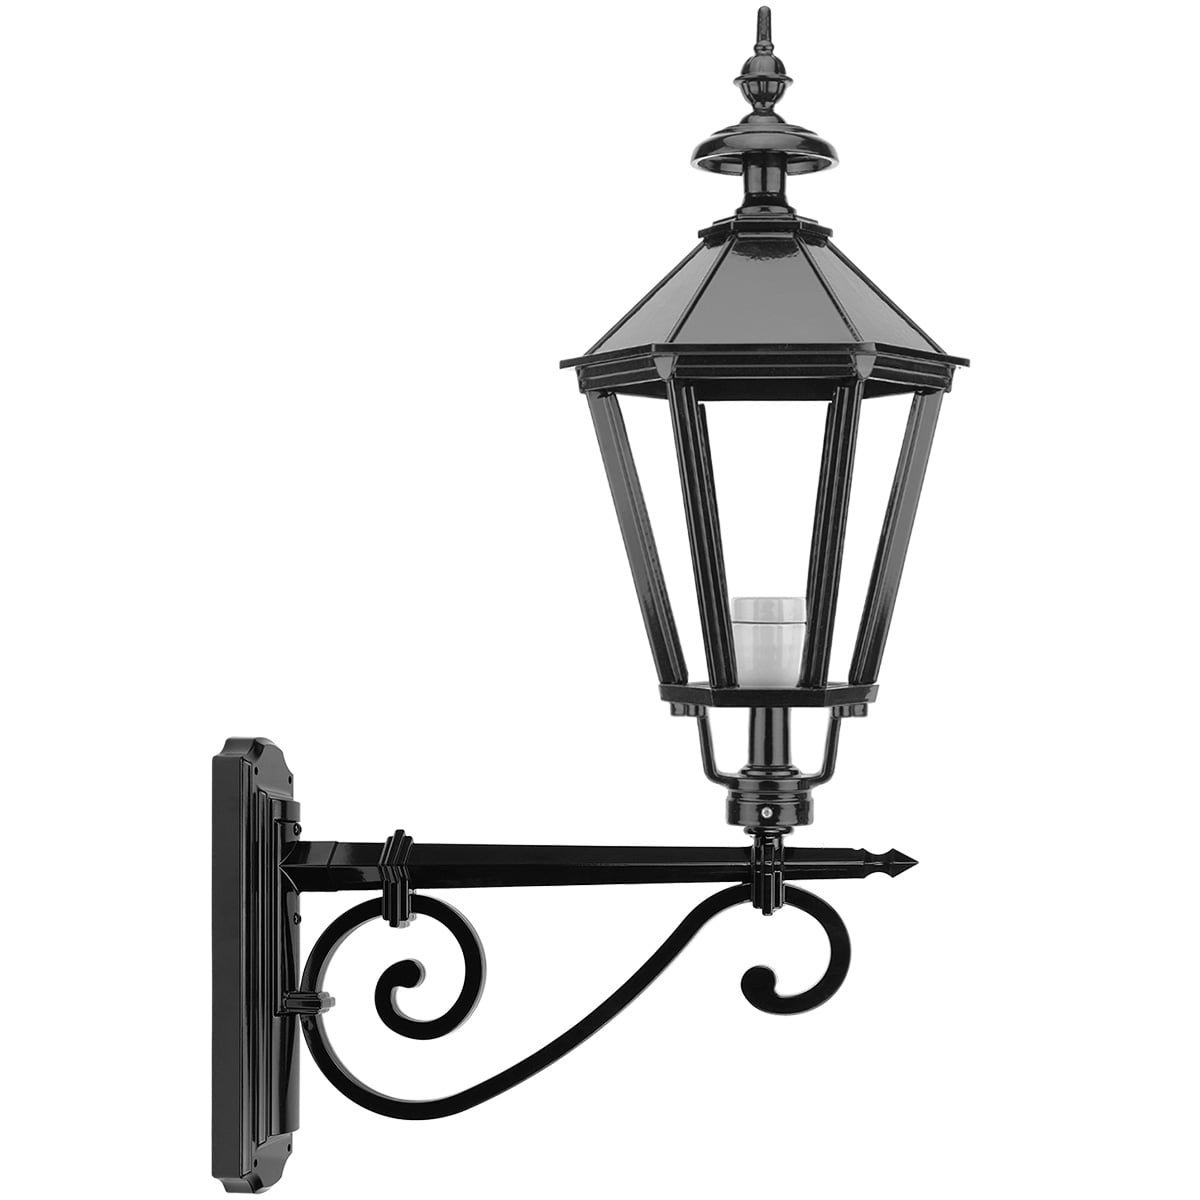 Lantaarn lamp buitenmuur Buggenum - 115 cm